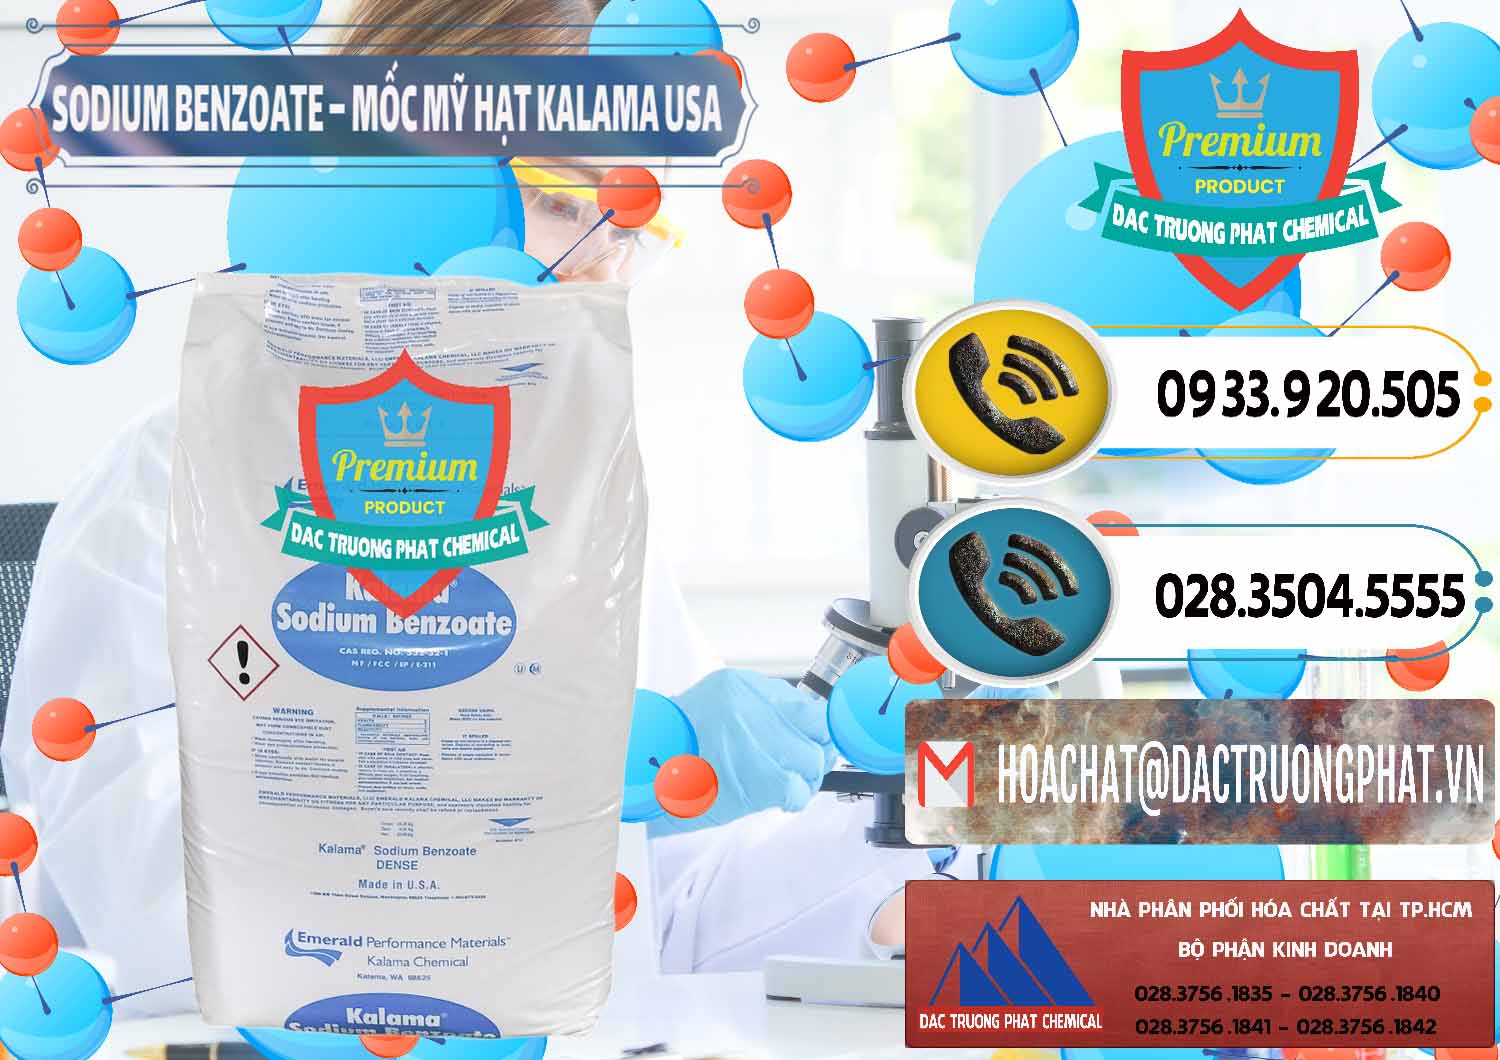 Nơi chuyên phân phối - bán Sodium Benzoate - Mốc Hạt Kalama Food Grade Mỹ Usa - 0137 - Công ty chuyên cung cấp & bán hóa chất tại TP.HCM - hoachatdetnhuom.vn